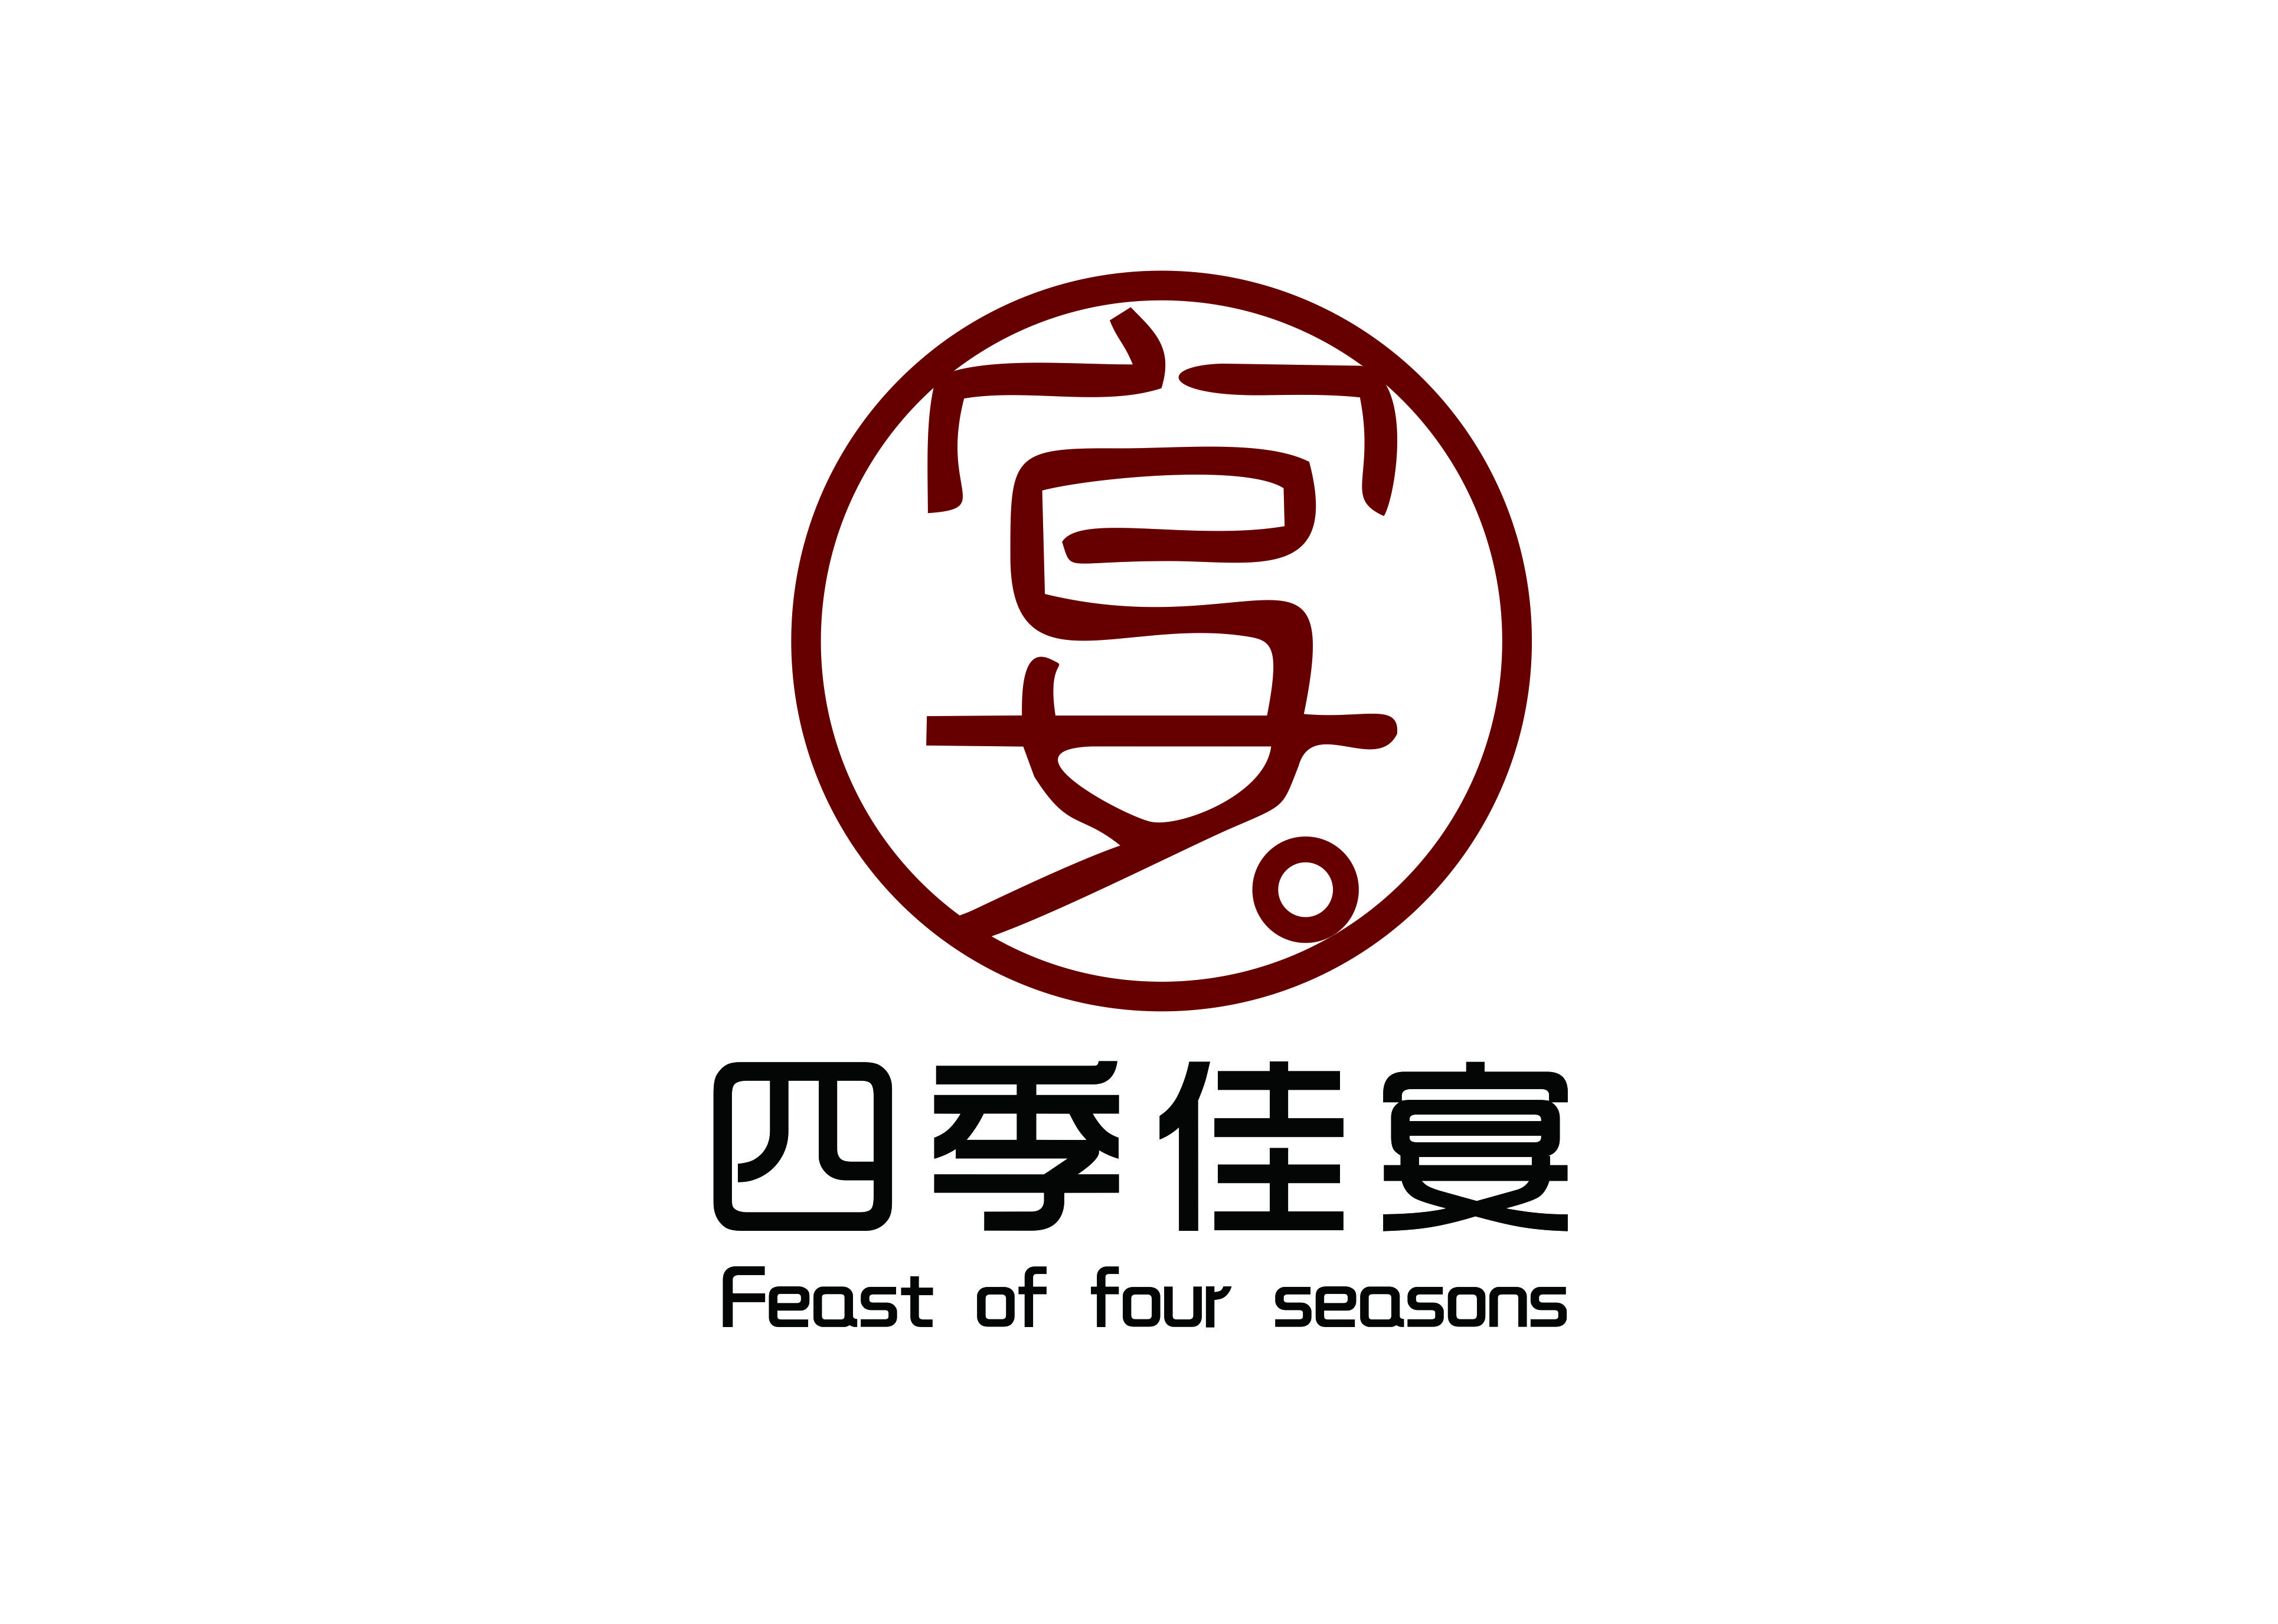 广州四季佳宴餐饮管理有限公司